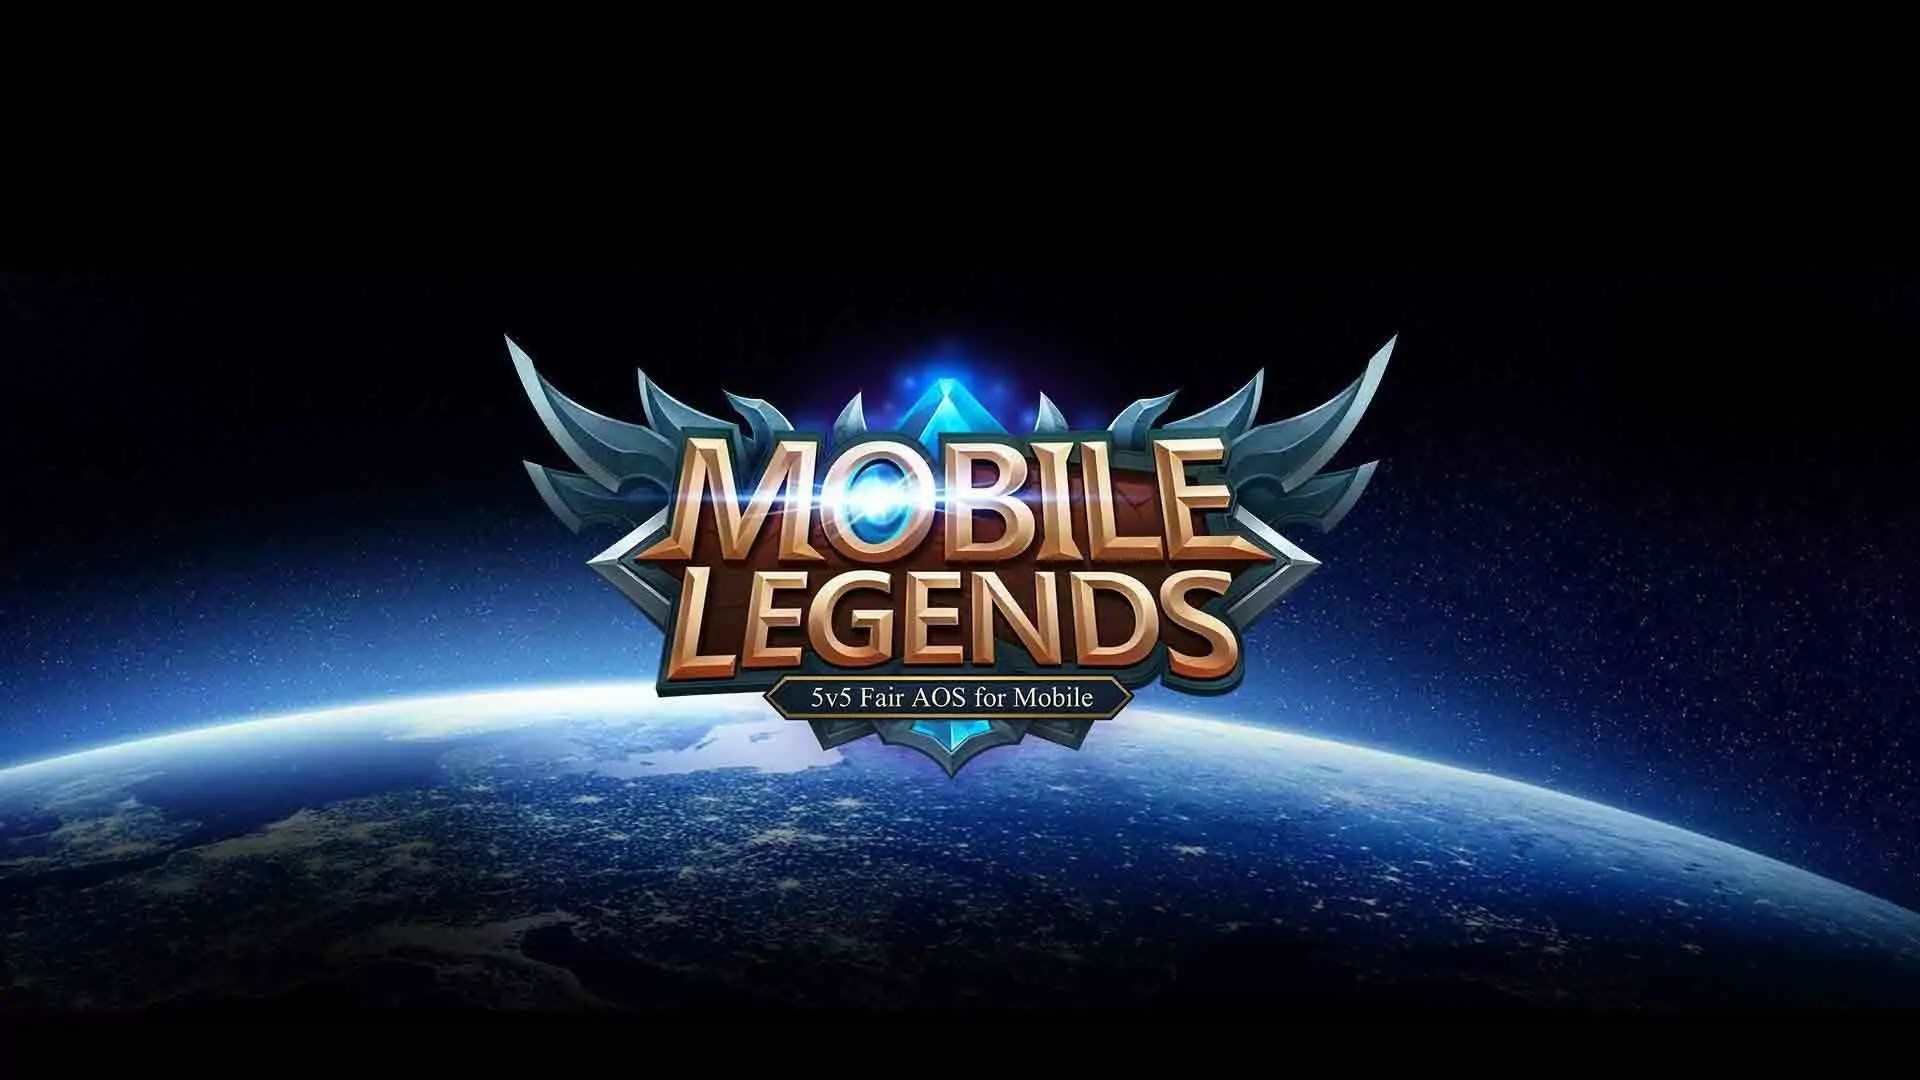 Cara Kirim Hero Mobile Legends Ke Teman Tanpa Diamond. Cara Kirim Hero Mobile Legends ke Teman Tanpa Diamond, Real/Hoax?